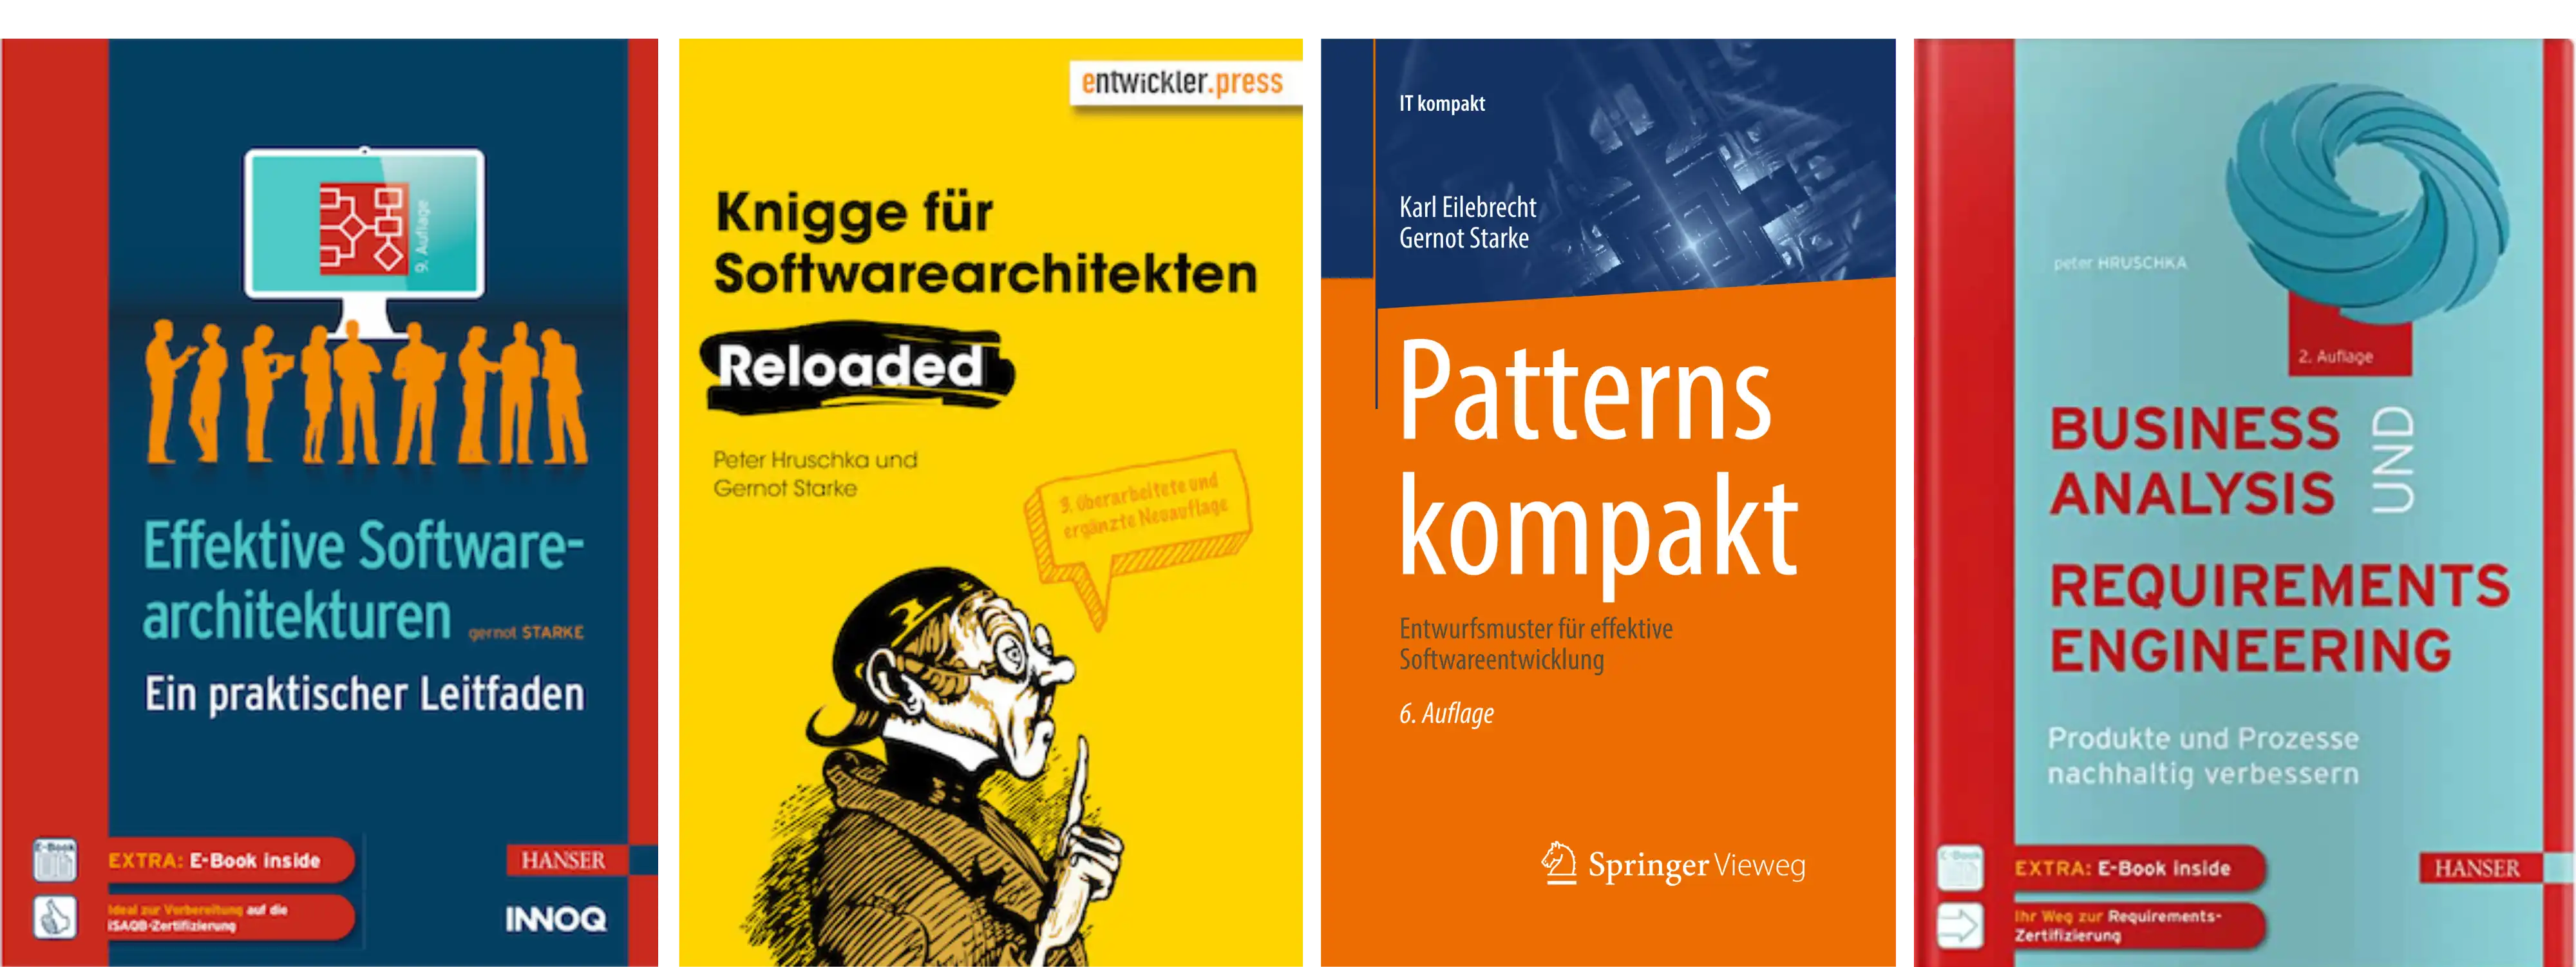 Buchcover von: Effektive Softwarearchitekturen, Knigge für Softwarearchitekten, Patterns-Kompakt und Business Analysis und Requirements Engineering